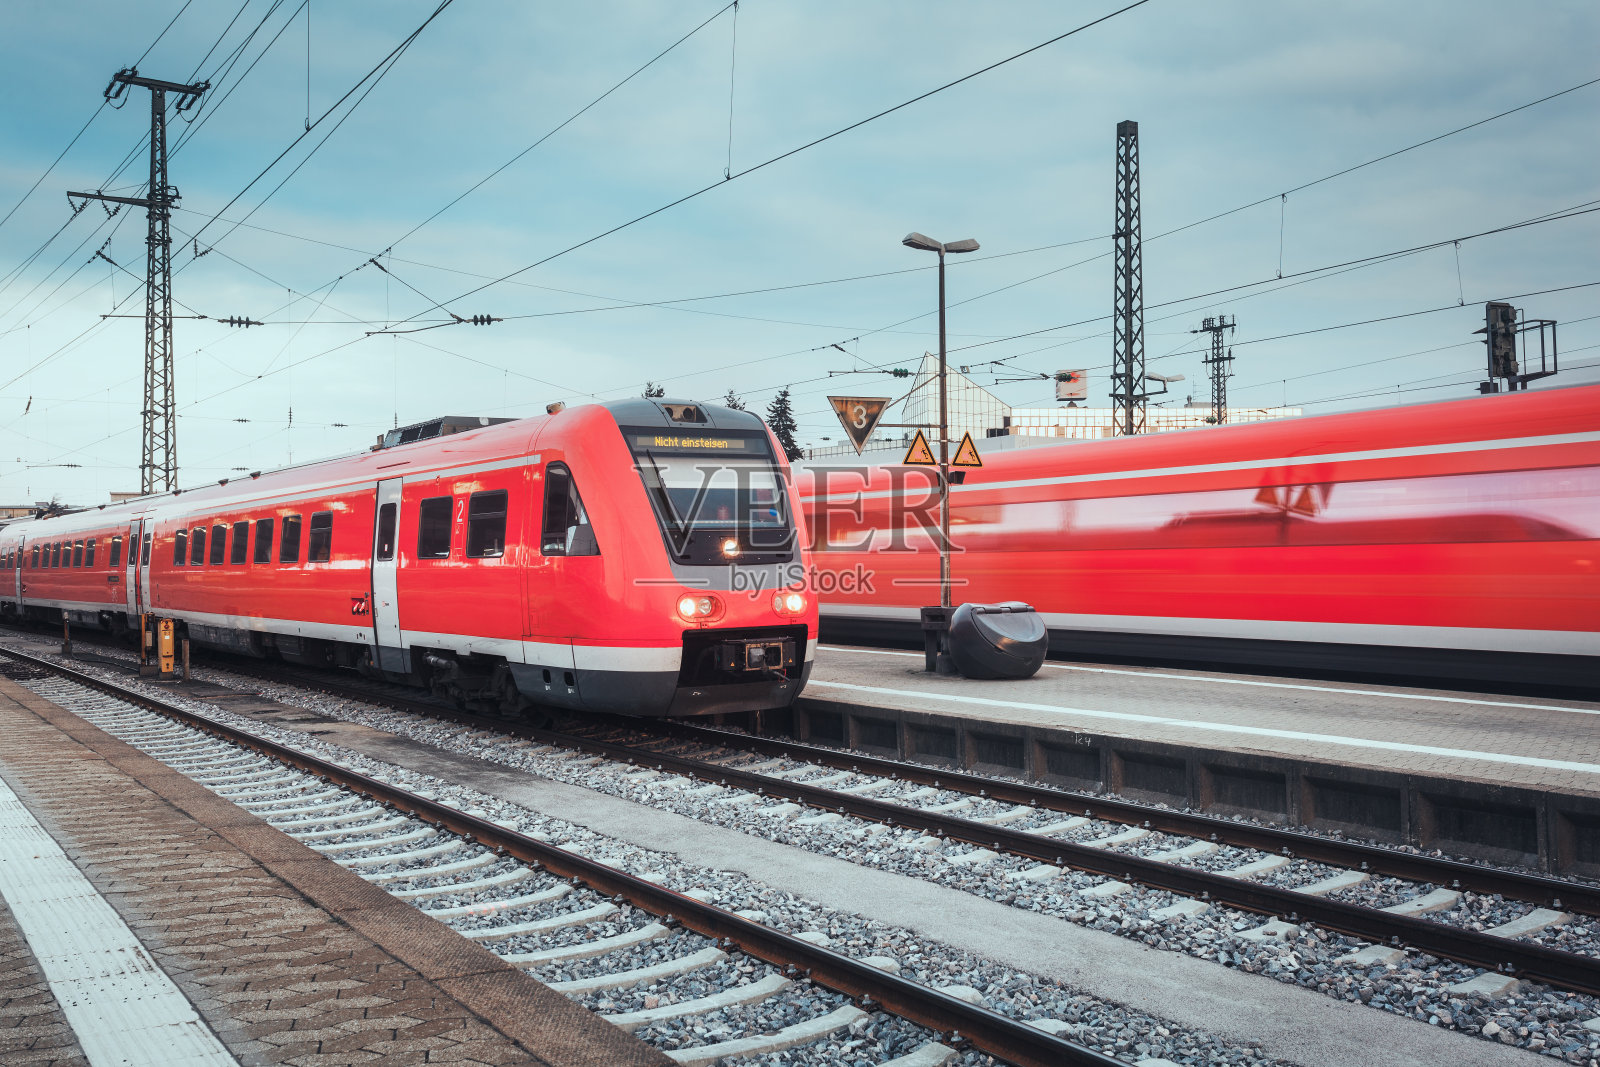 火车站有现代化的红色客运列车。工业景观照片摄影图片